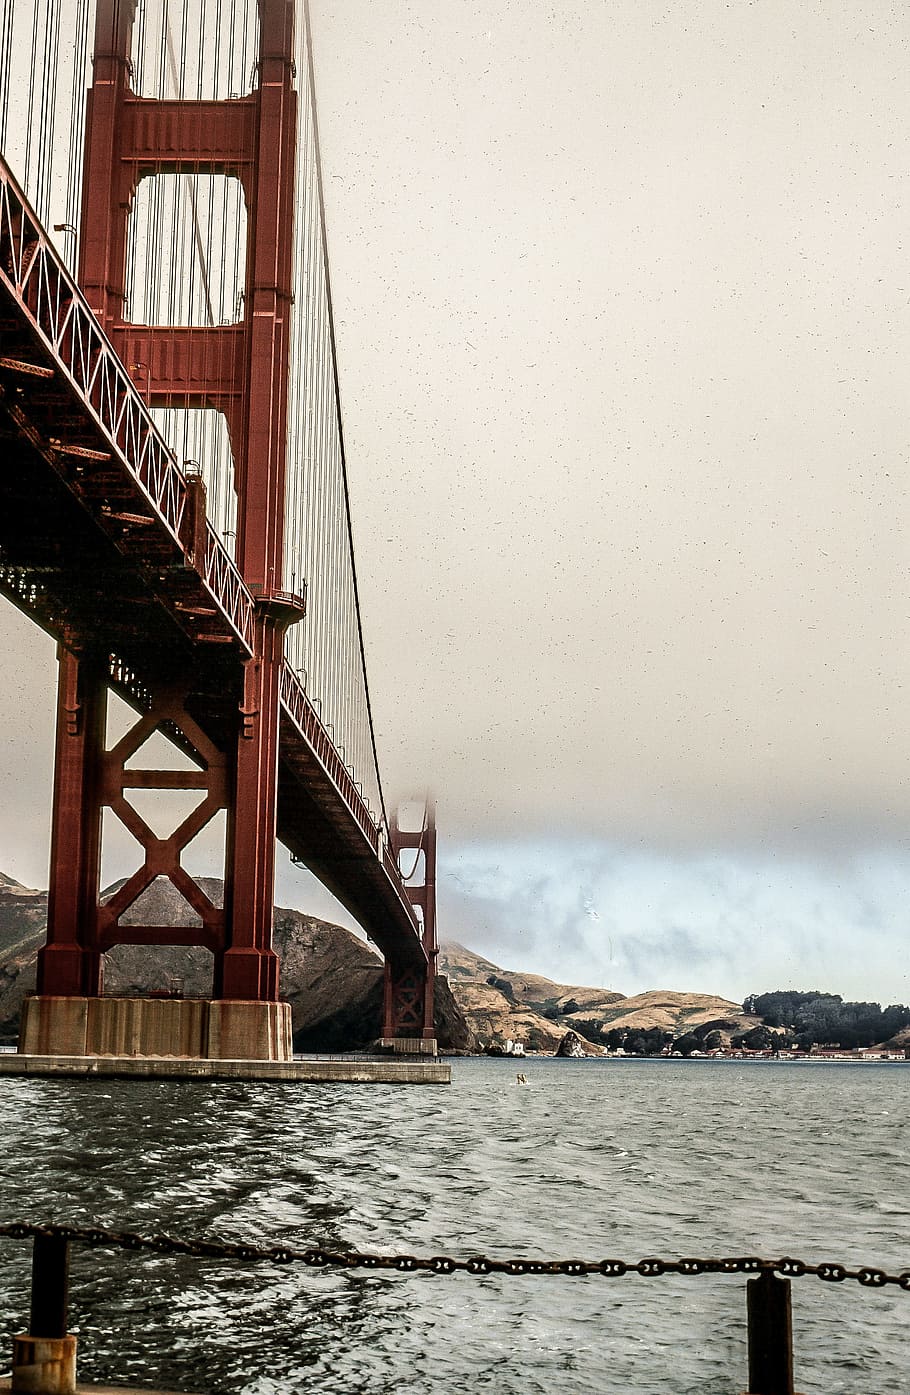 посмотреть, Золотой, Воротный мост, Прибой, точка форта морской дамбы, Сан-Франциско, Калифорния, США, Америка, архитектура